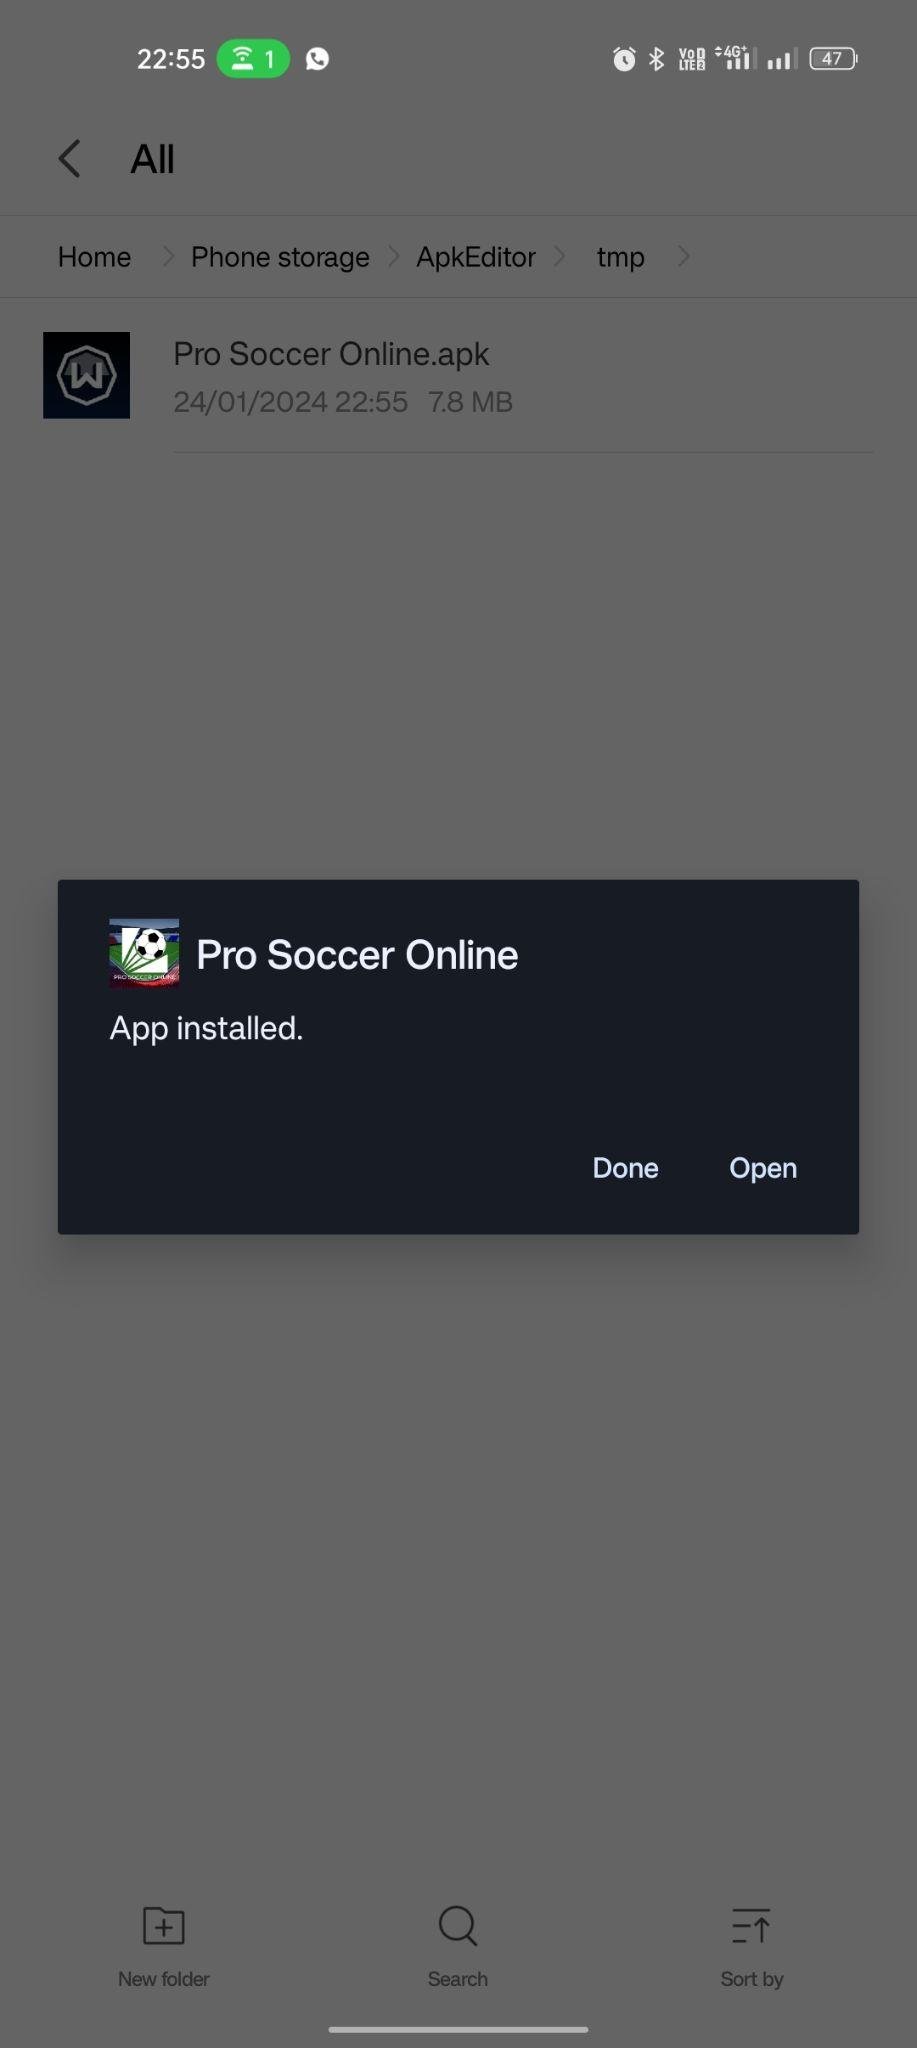 Pro Soccer Online apk installed